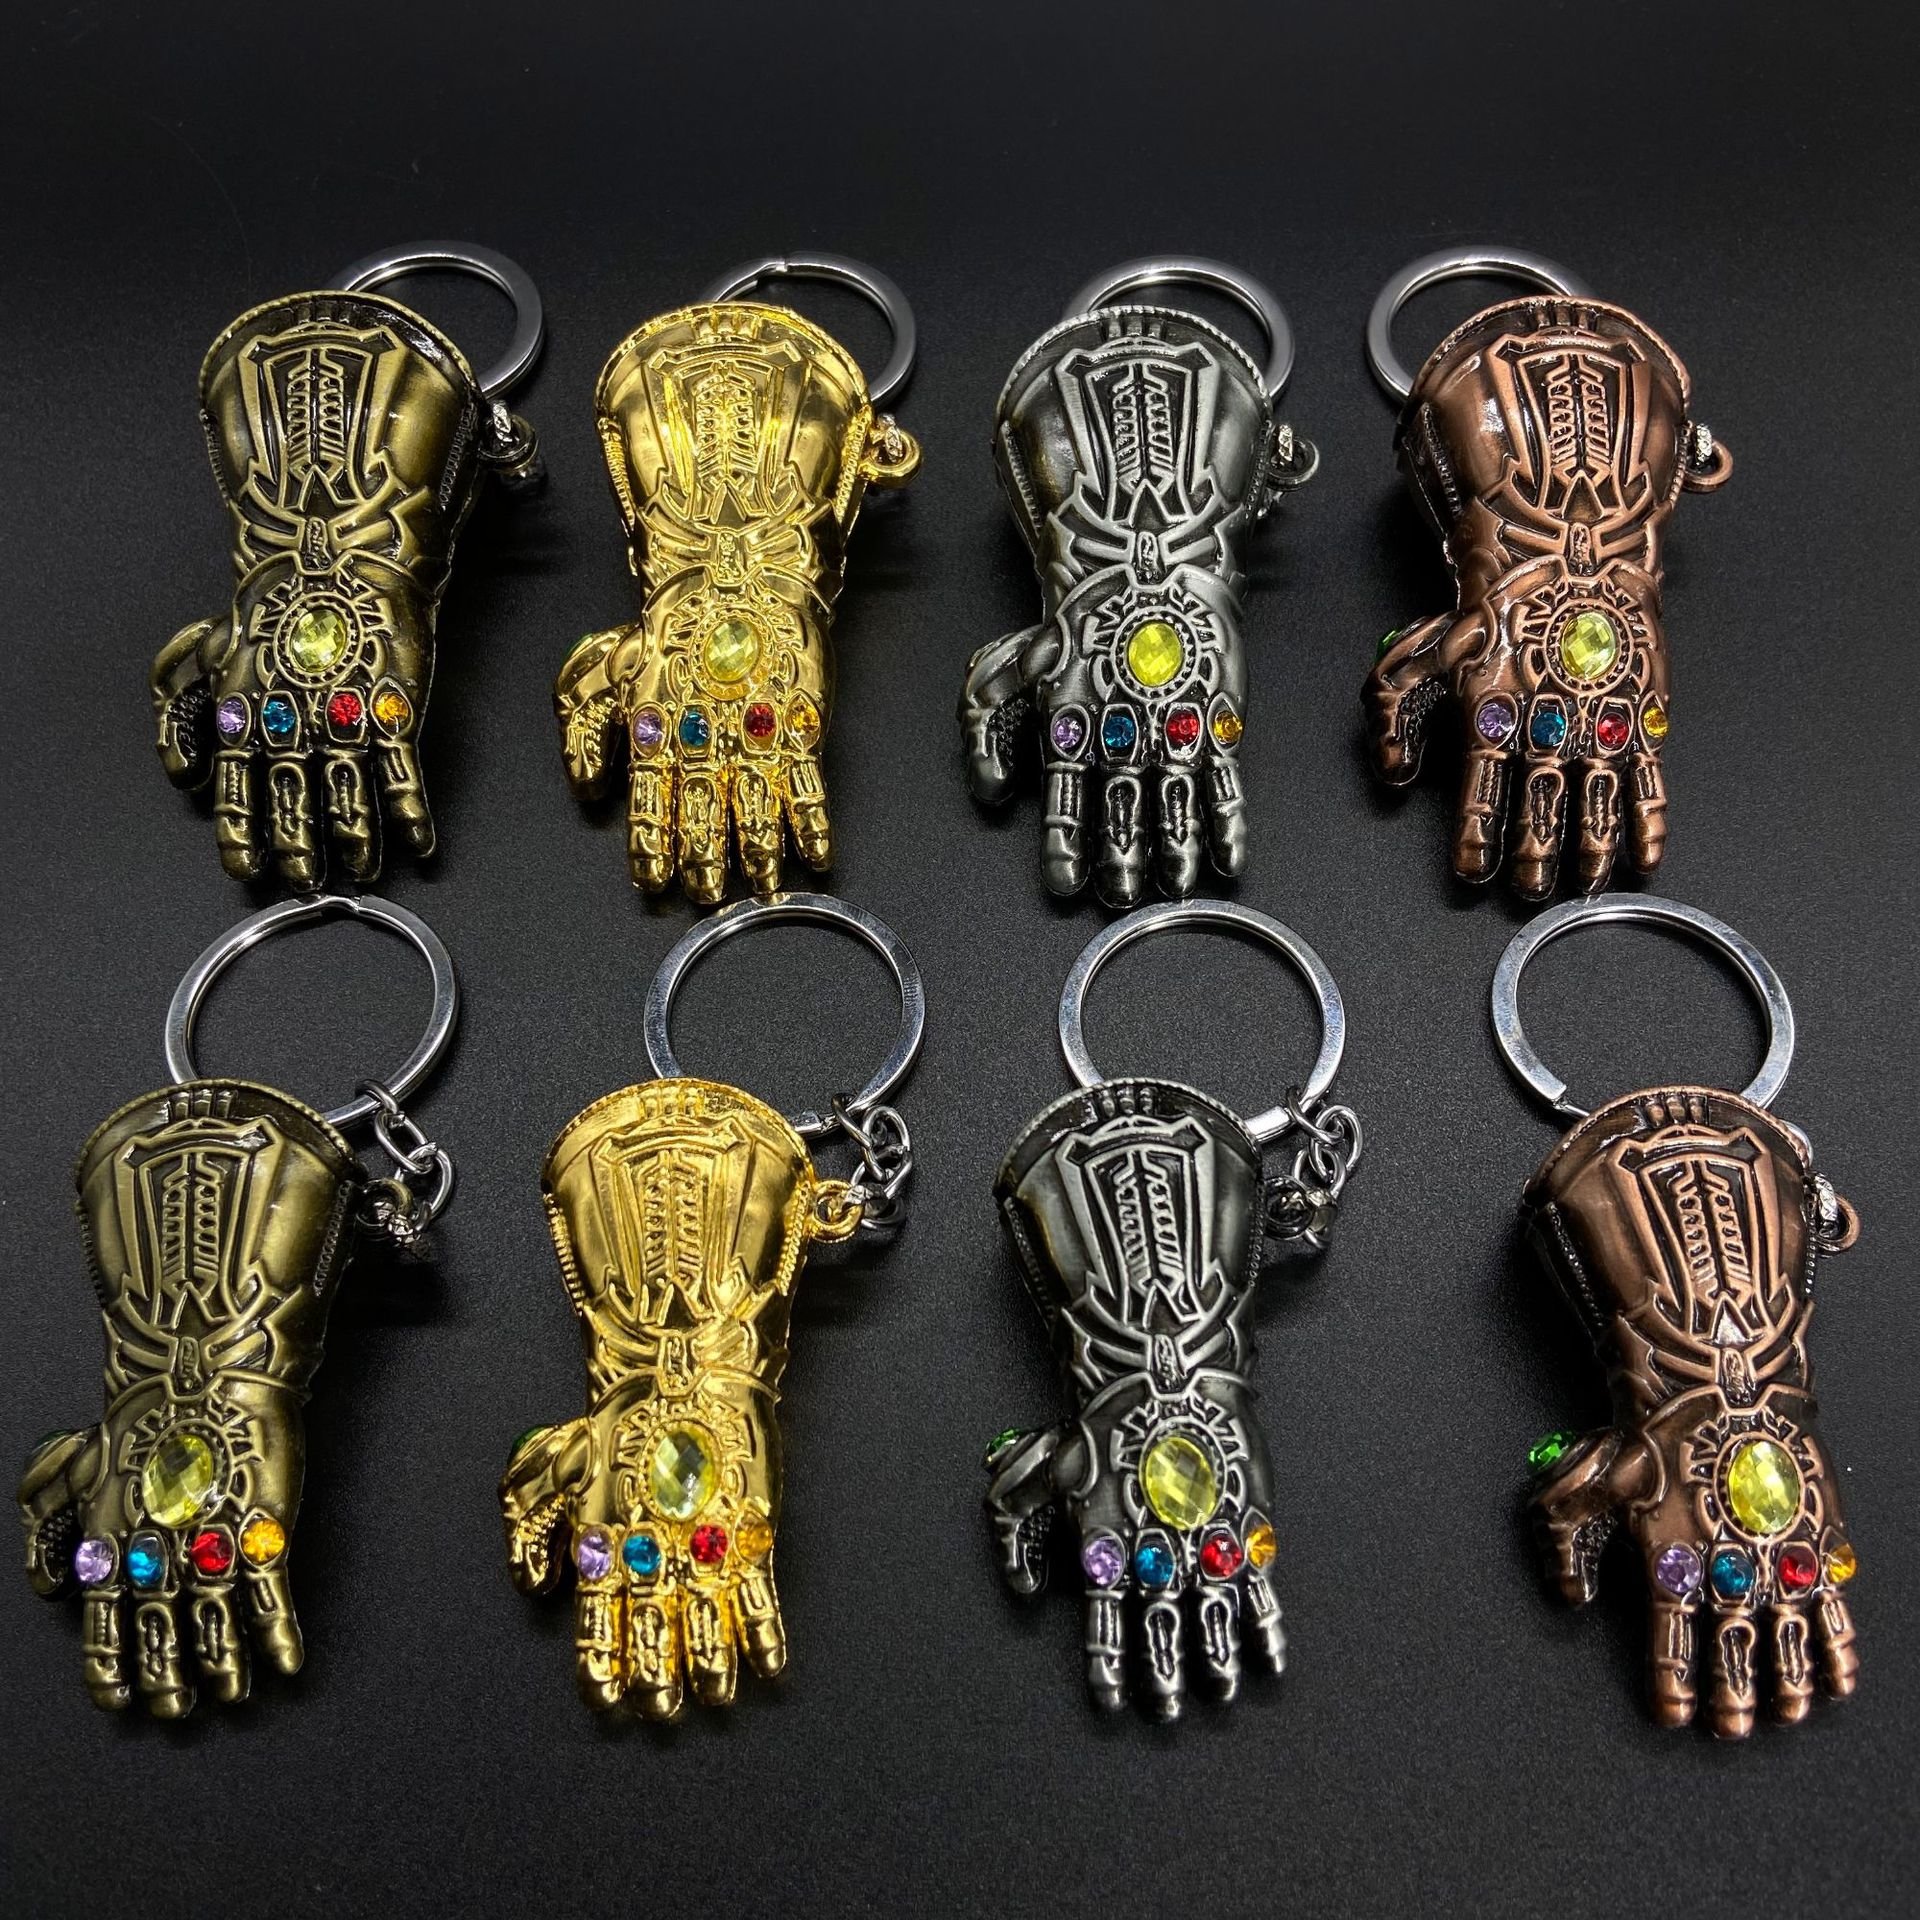 复仇者联盟系列无限战争灭霸手套钥匙扣汽车小挂件工艺品礼品